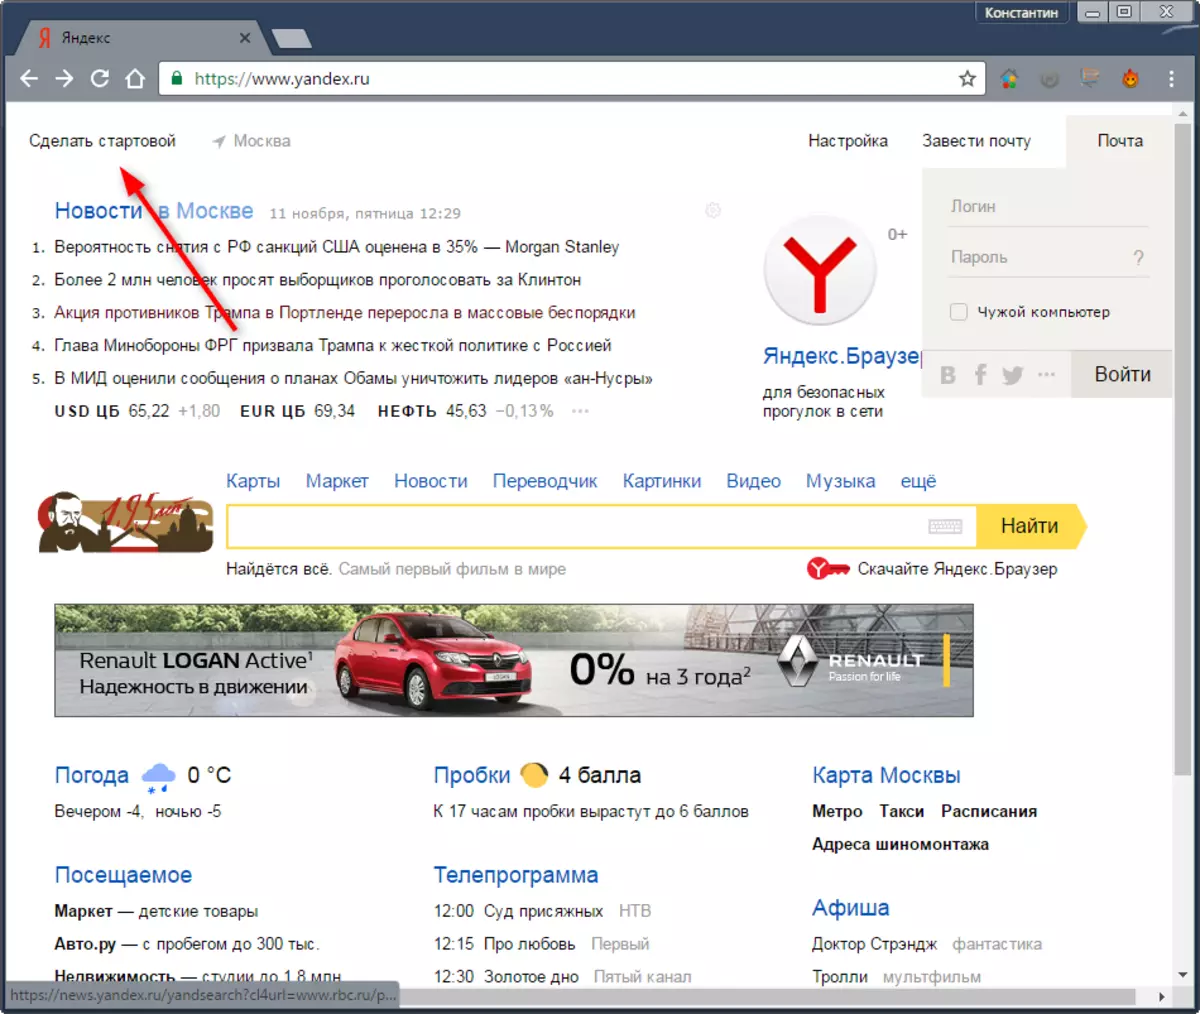 Yandex ආරම්භ කරන්නේ කෙසේද පිටුව 1